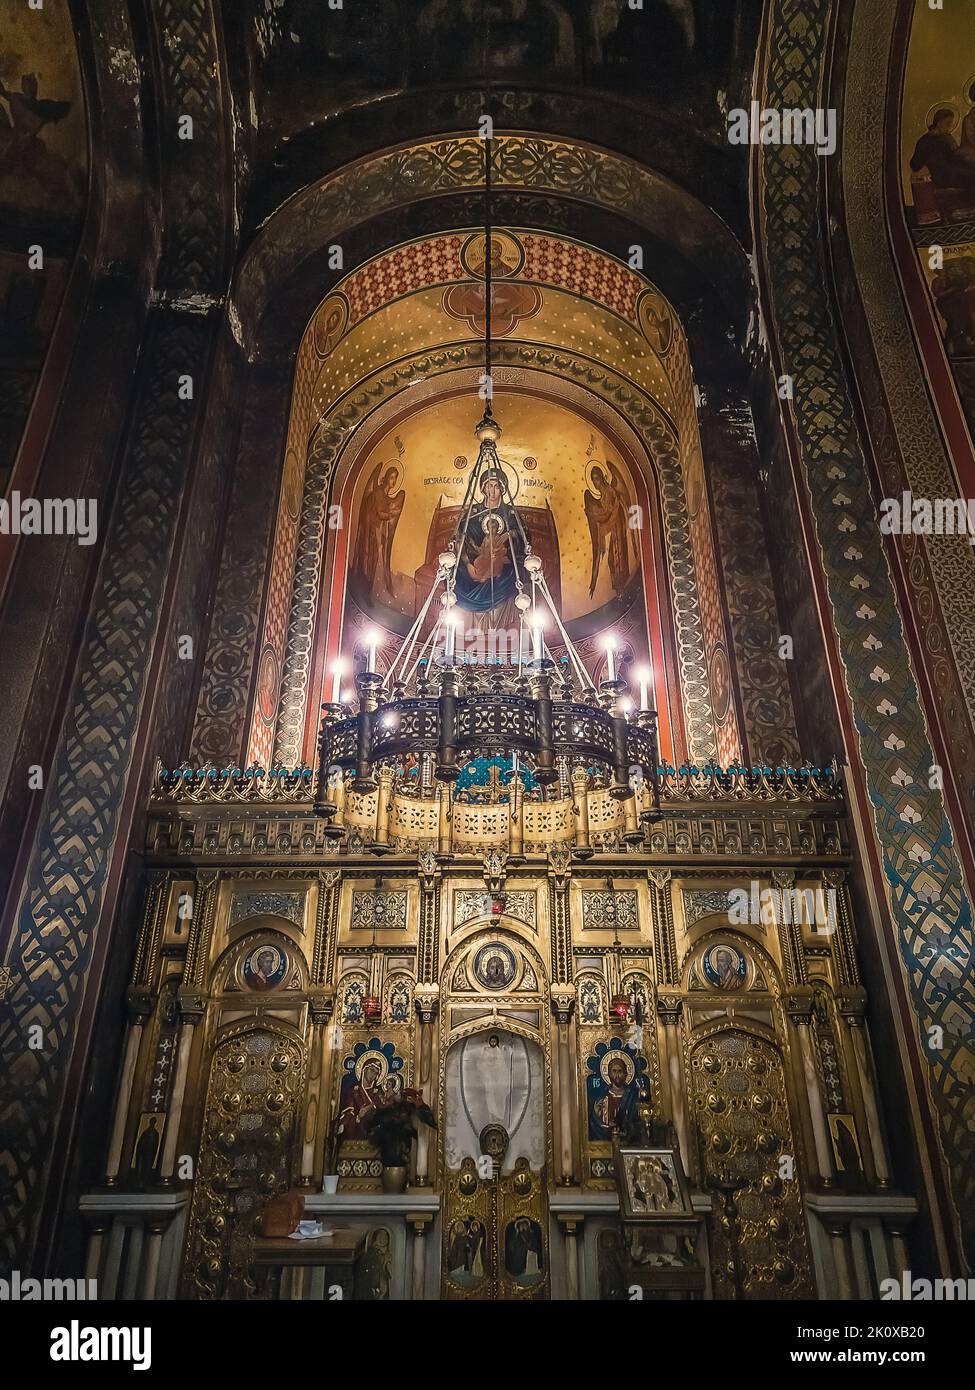 Dettagli interni del monastero di Curtea de Arges. L'altare e le pareti ornate con icone dipinte e un lampadario dorato con luci sospese dalla cei Foto Stock